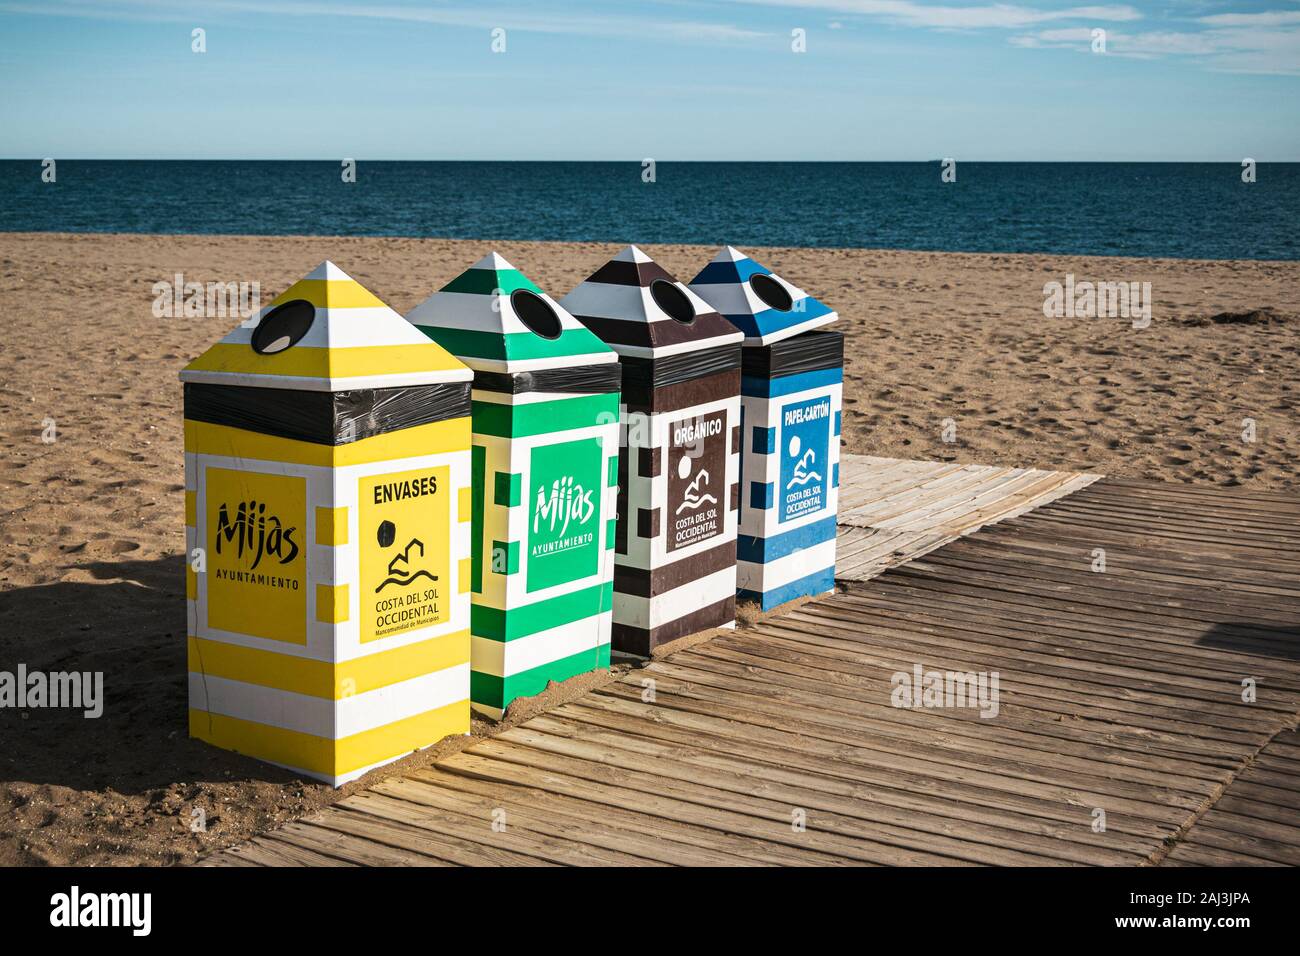 Reihe von bunten Mülleimer für Mülltrennung und Recycling am Strand Cala de Mijas, Costa del Sol, Spanien. Stockfoto